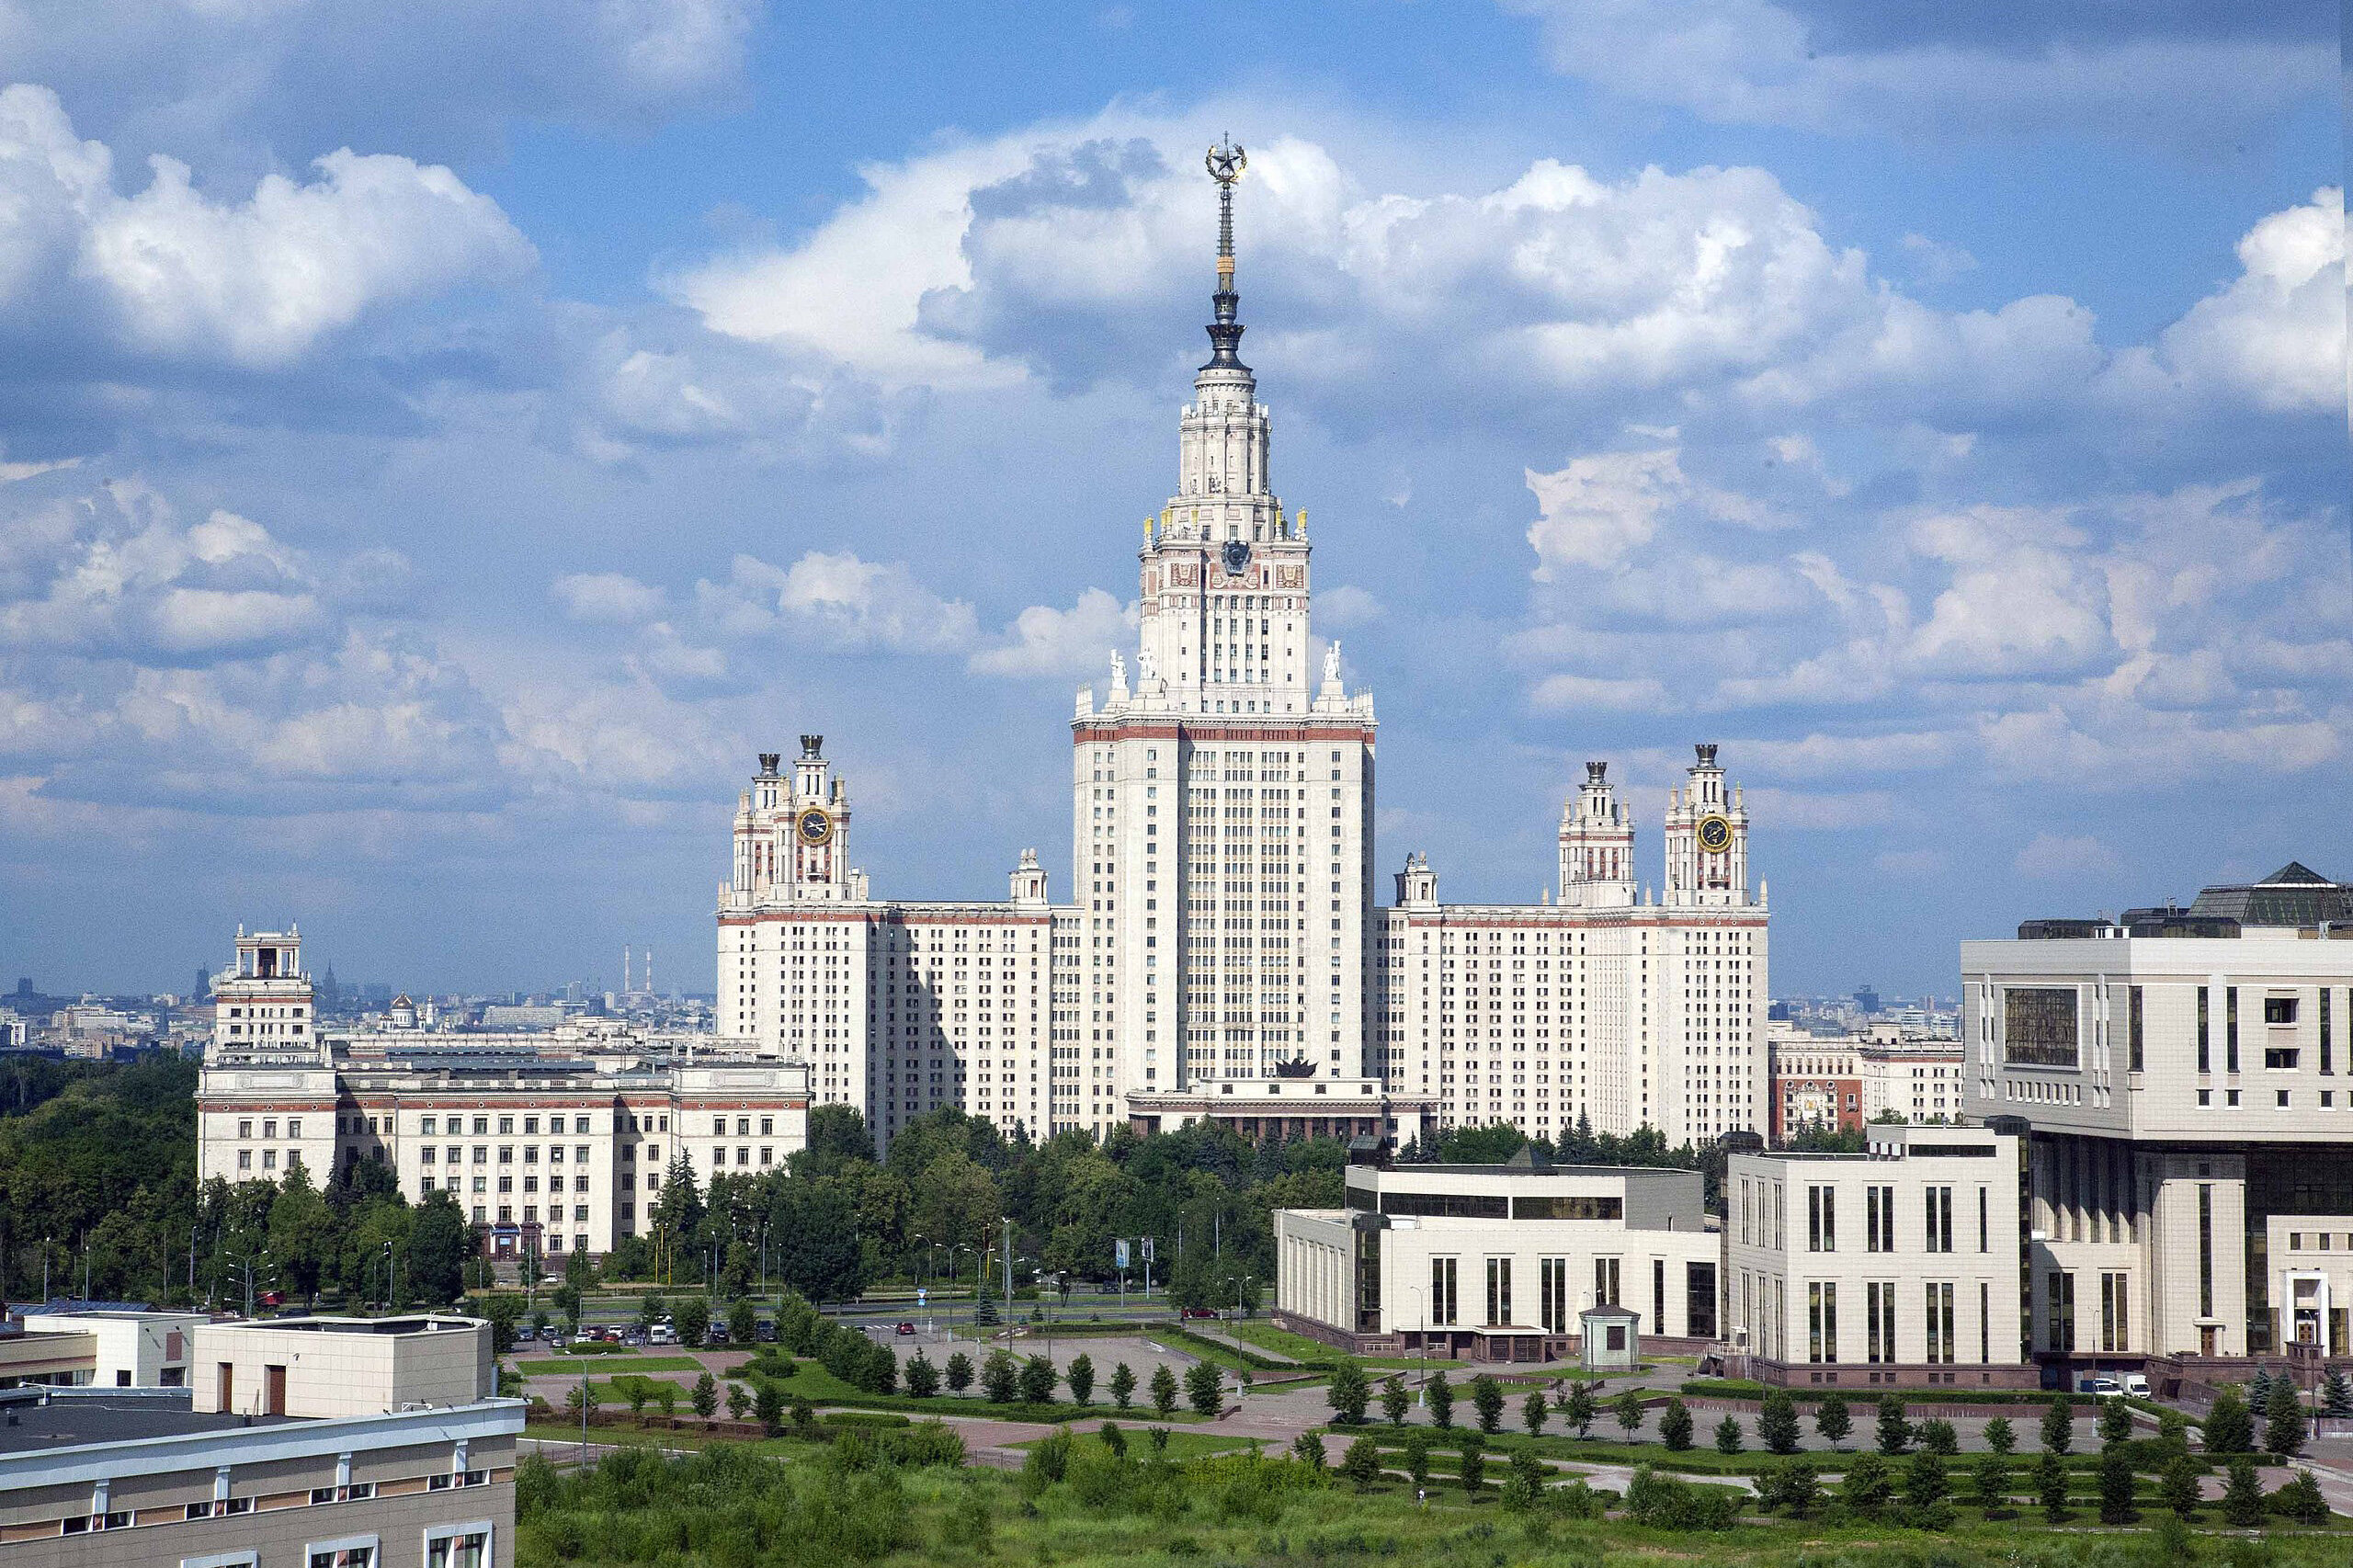 Яндекс Аренда узнала, сколько стоит снять квартиру рядом с главными вузами Москвы